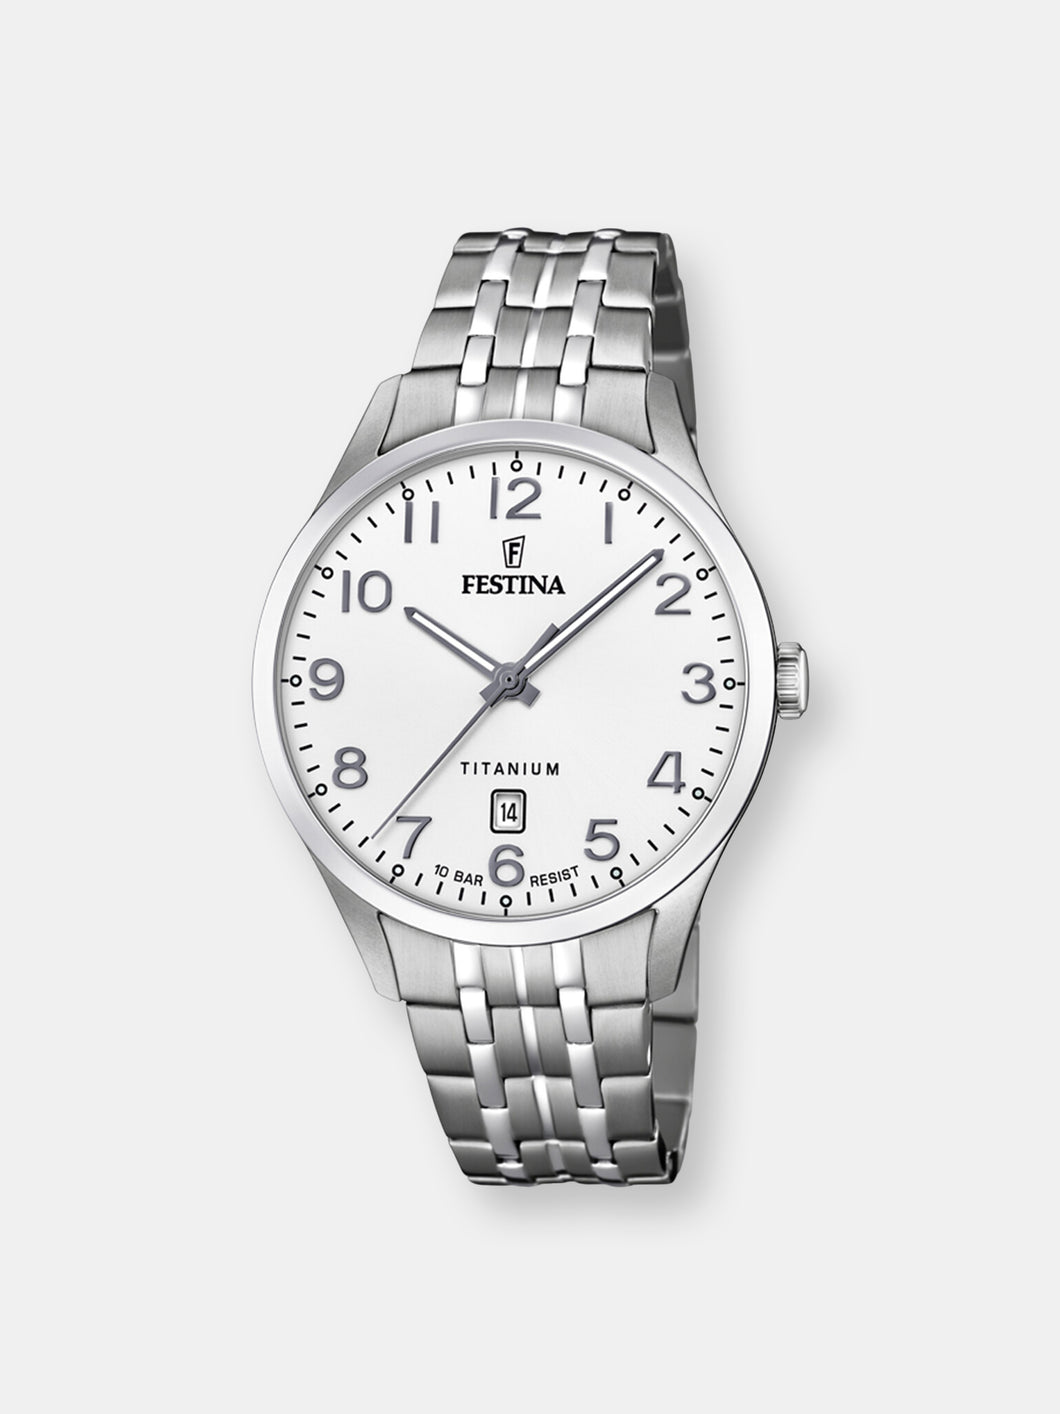 Festina Men's Titanium F20466-1F37 White Leather Quartz Dress Watch